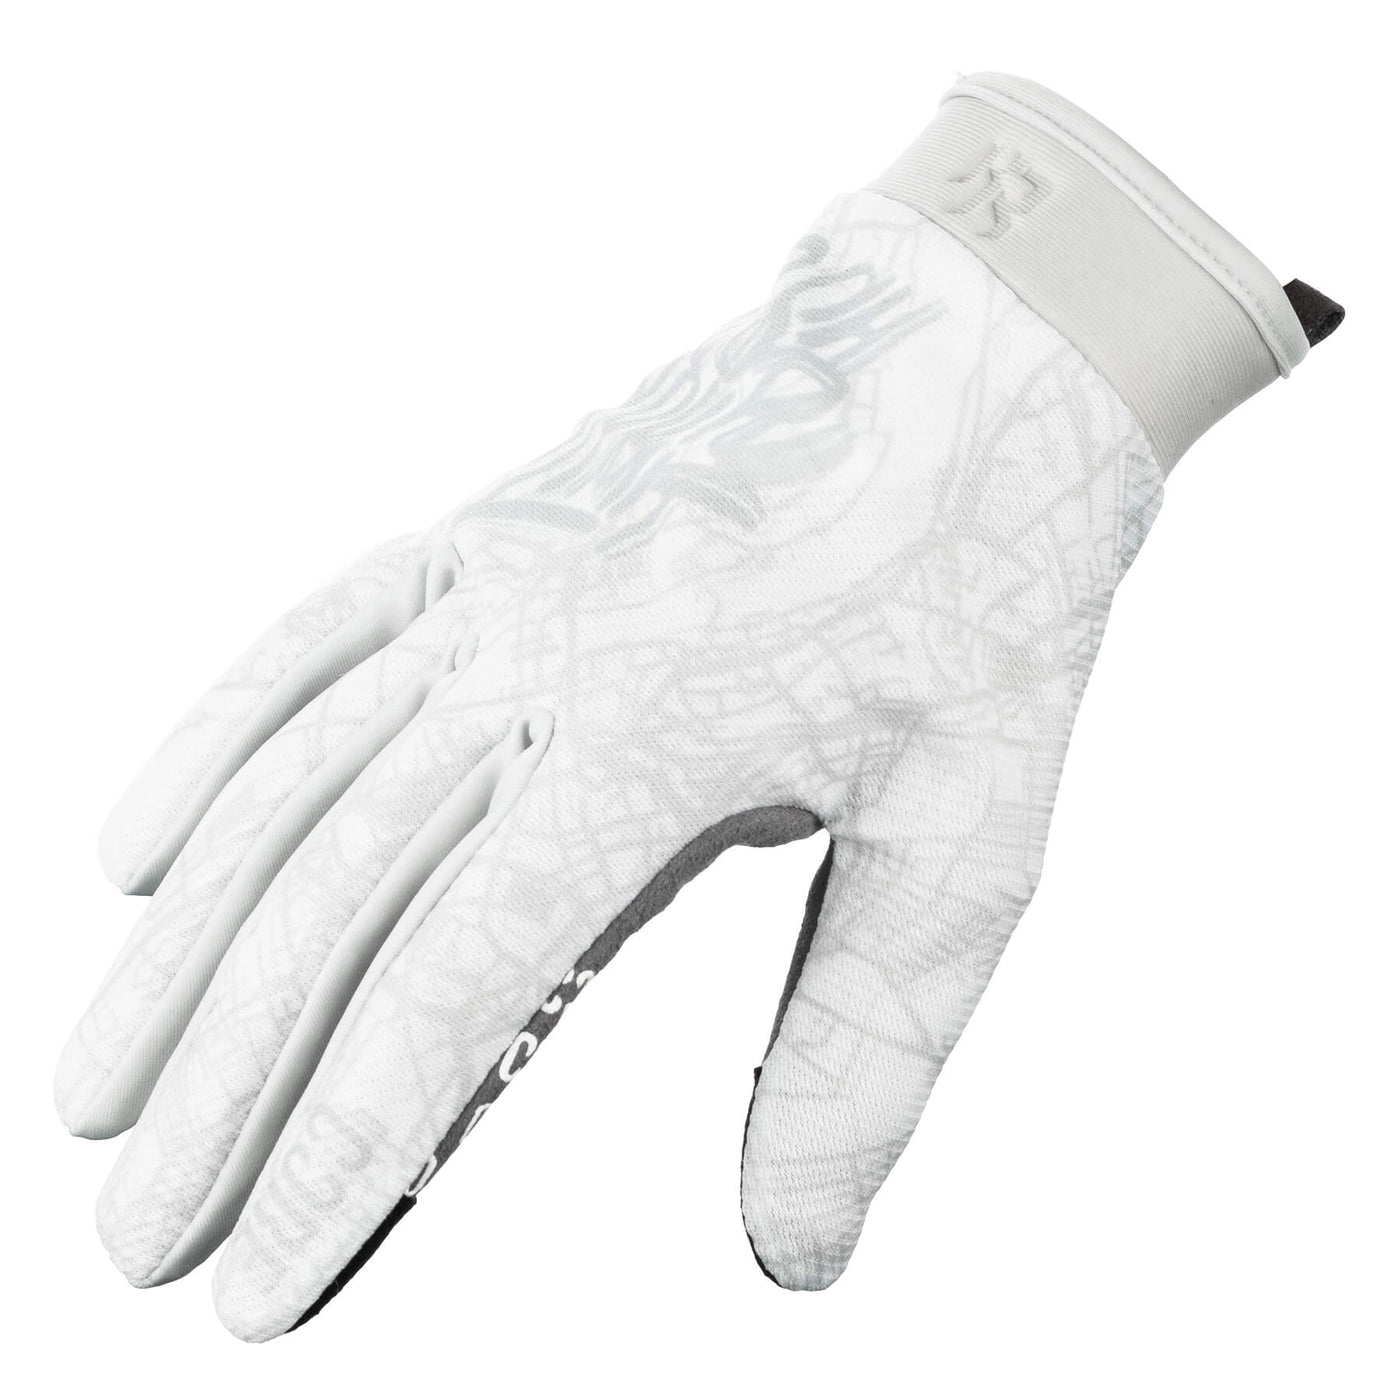 CORE Protection Kieran Reilly Signature Aero BMX Bike Gloves - White